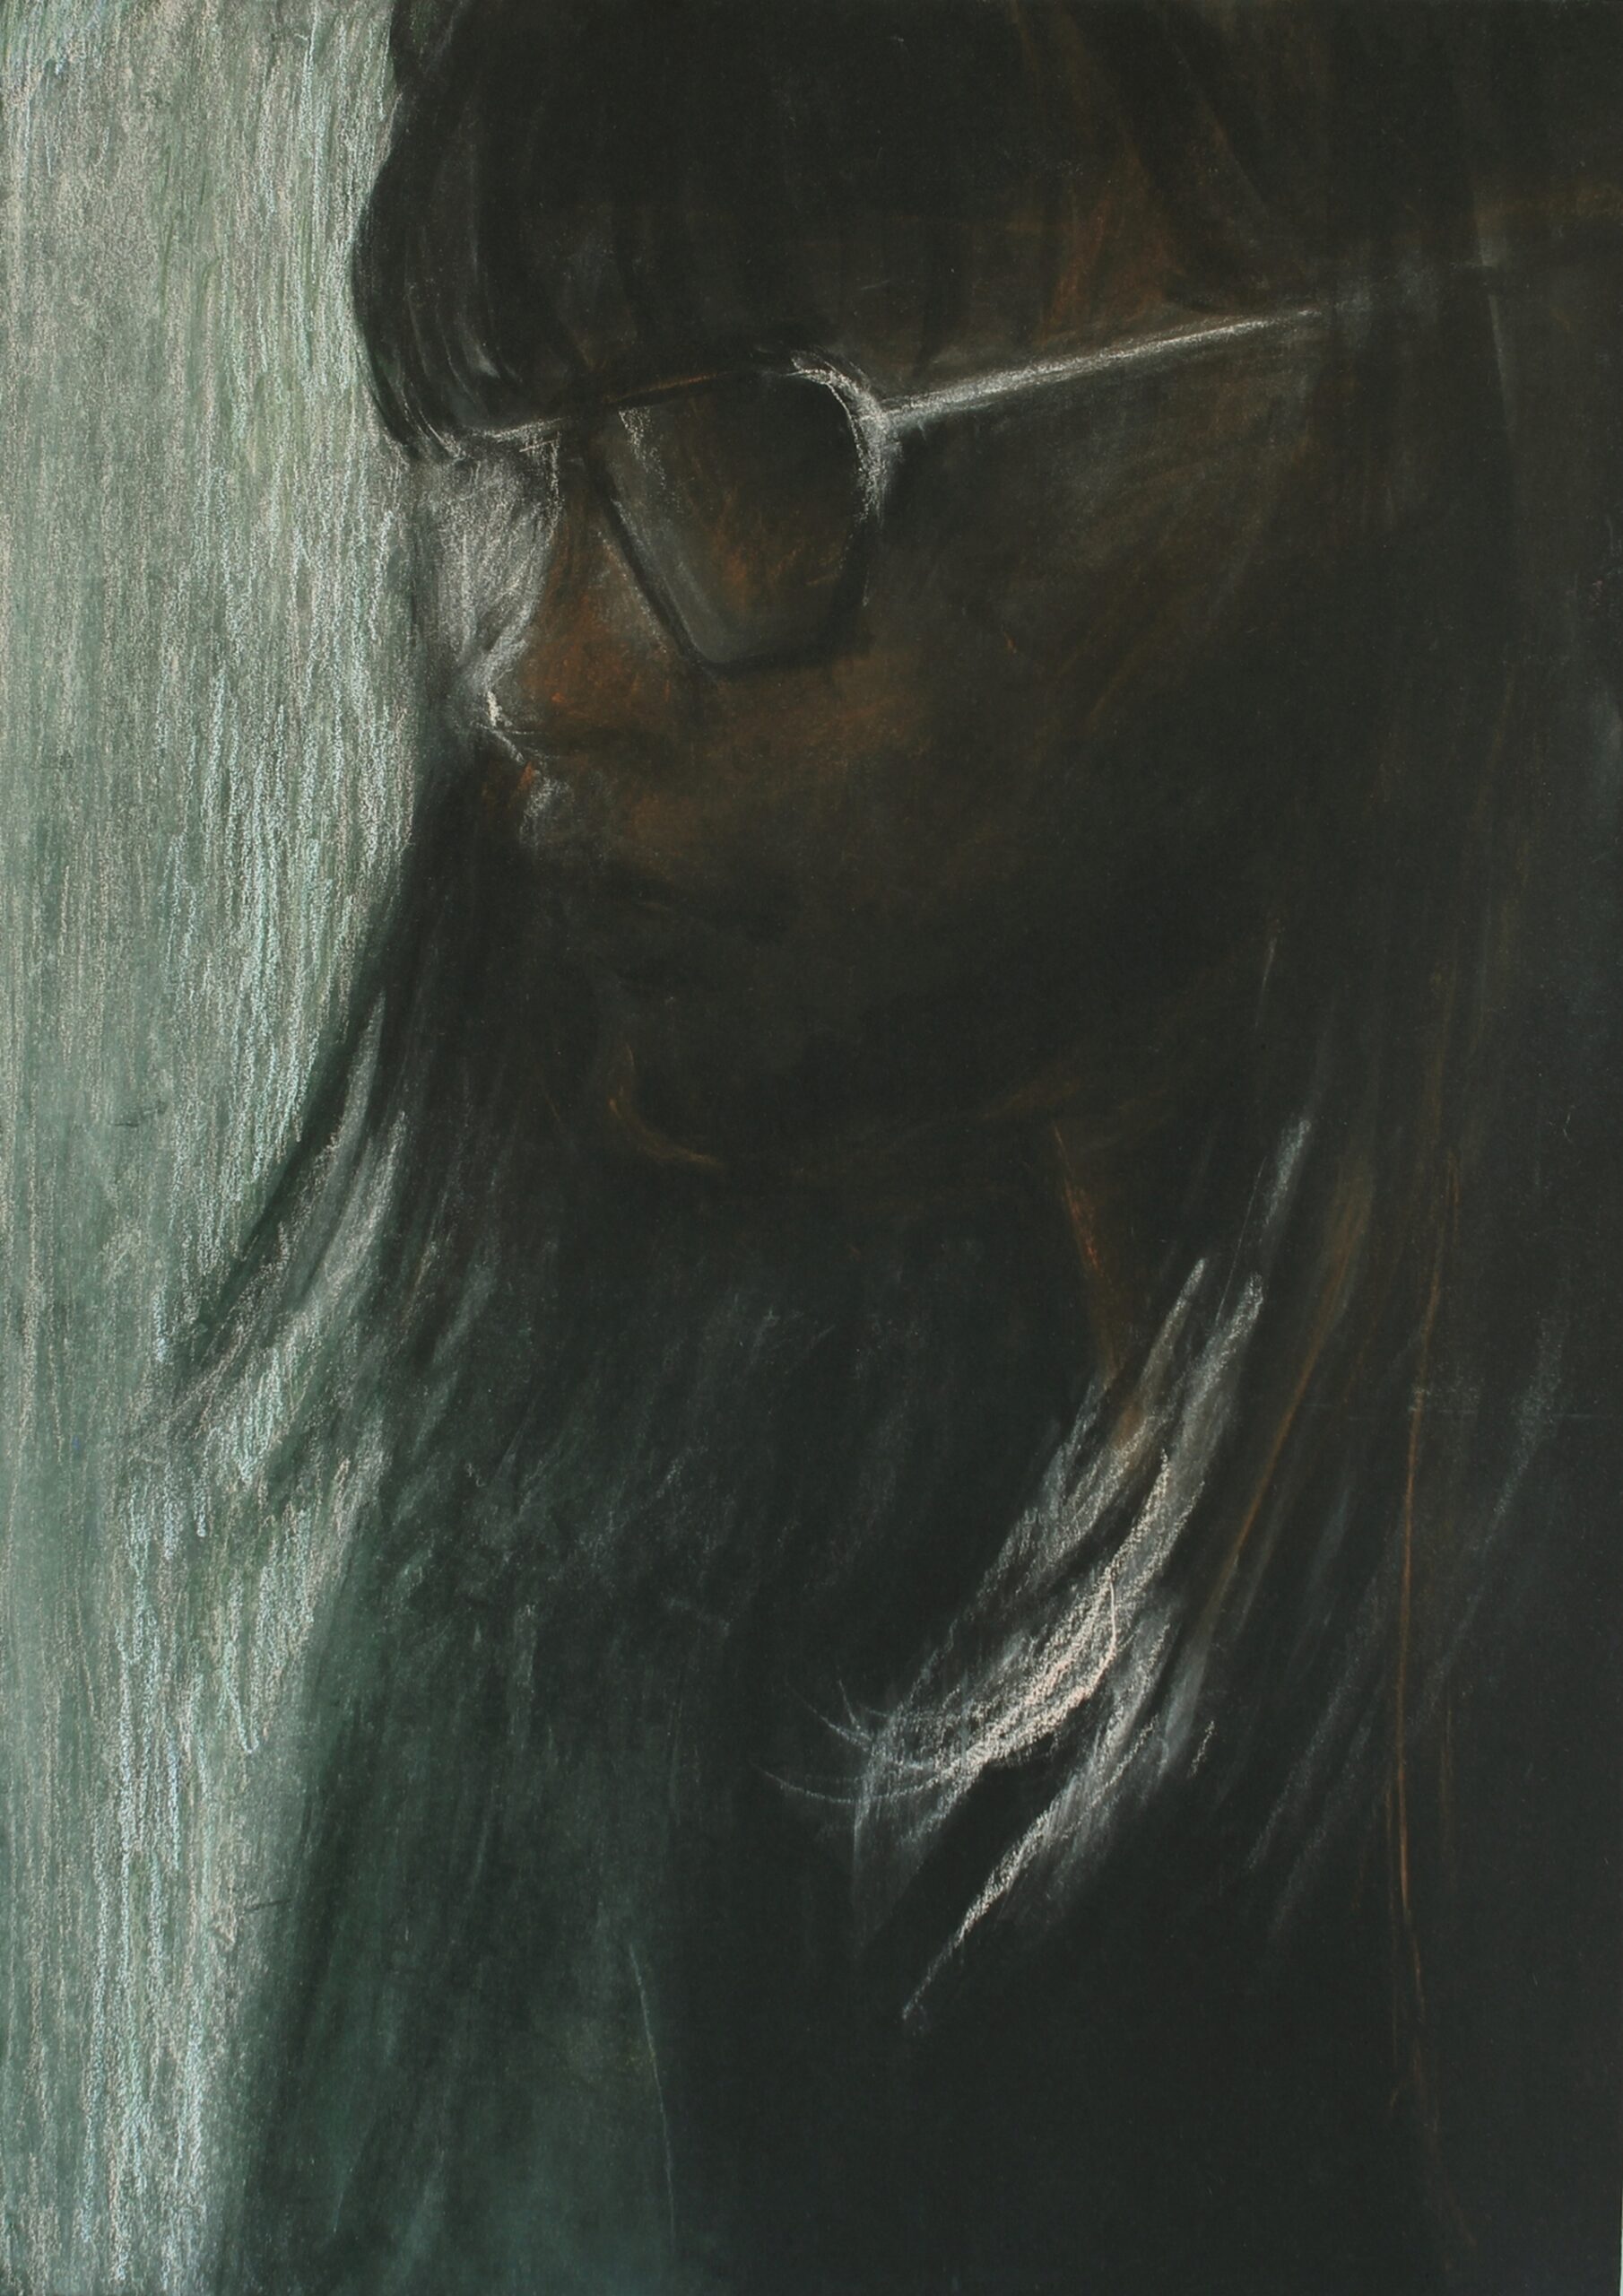 Portret zwróconej nieco w lewą stronę ciemnej postaci kobiecej, ukazanej niewyraźnie poprzez białe refleksy świetlne na okularach i włosach.